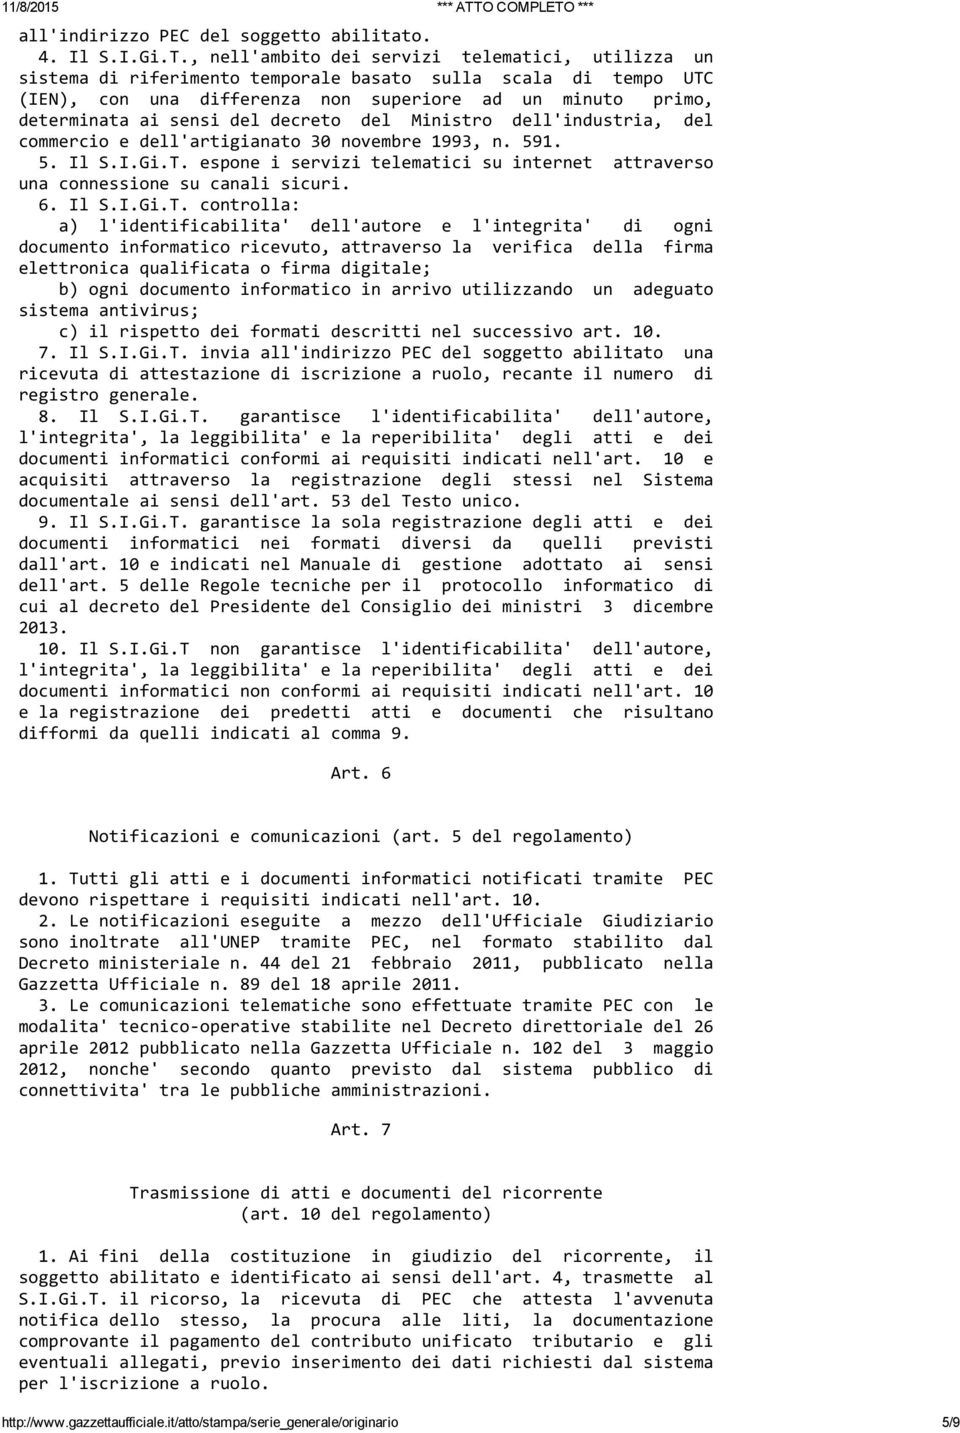 decreto del Ministro dell'industria, del commercio e dell'artigianato 30 novembre 1993, n. 591. 5. Il S.I.Gi.T. espone i servizi telematici su internet attraverso una connessione su canali sicuri. 6.